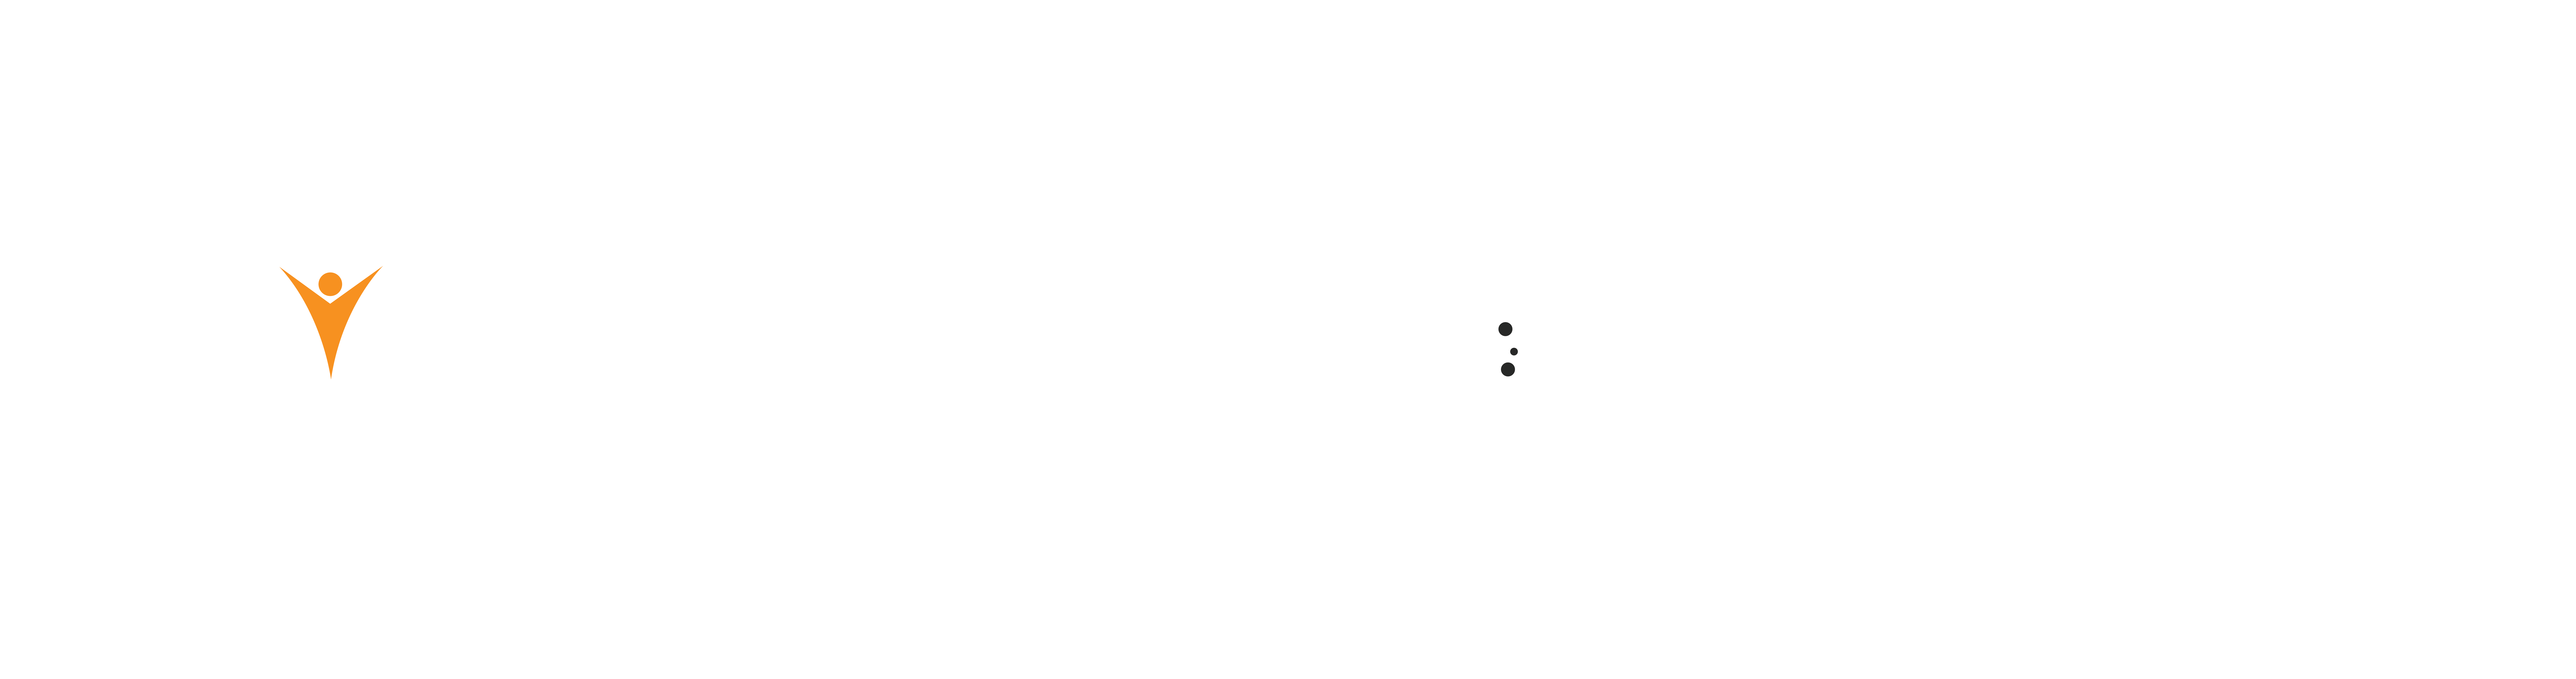 Mediyaan-logo-white